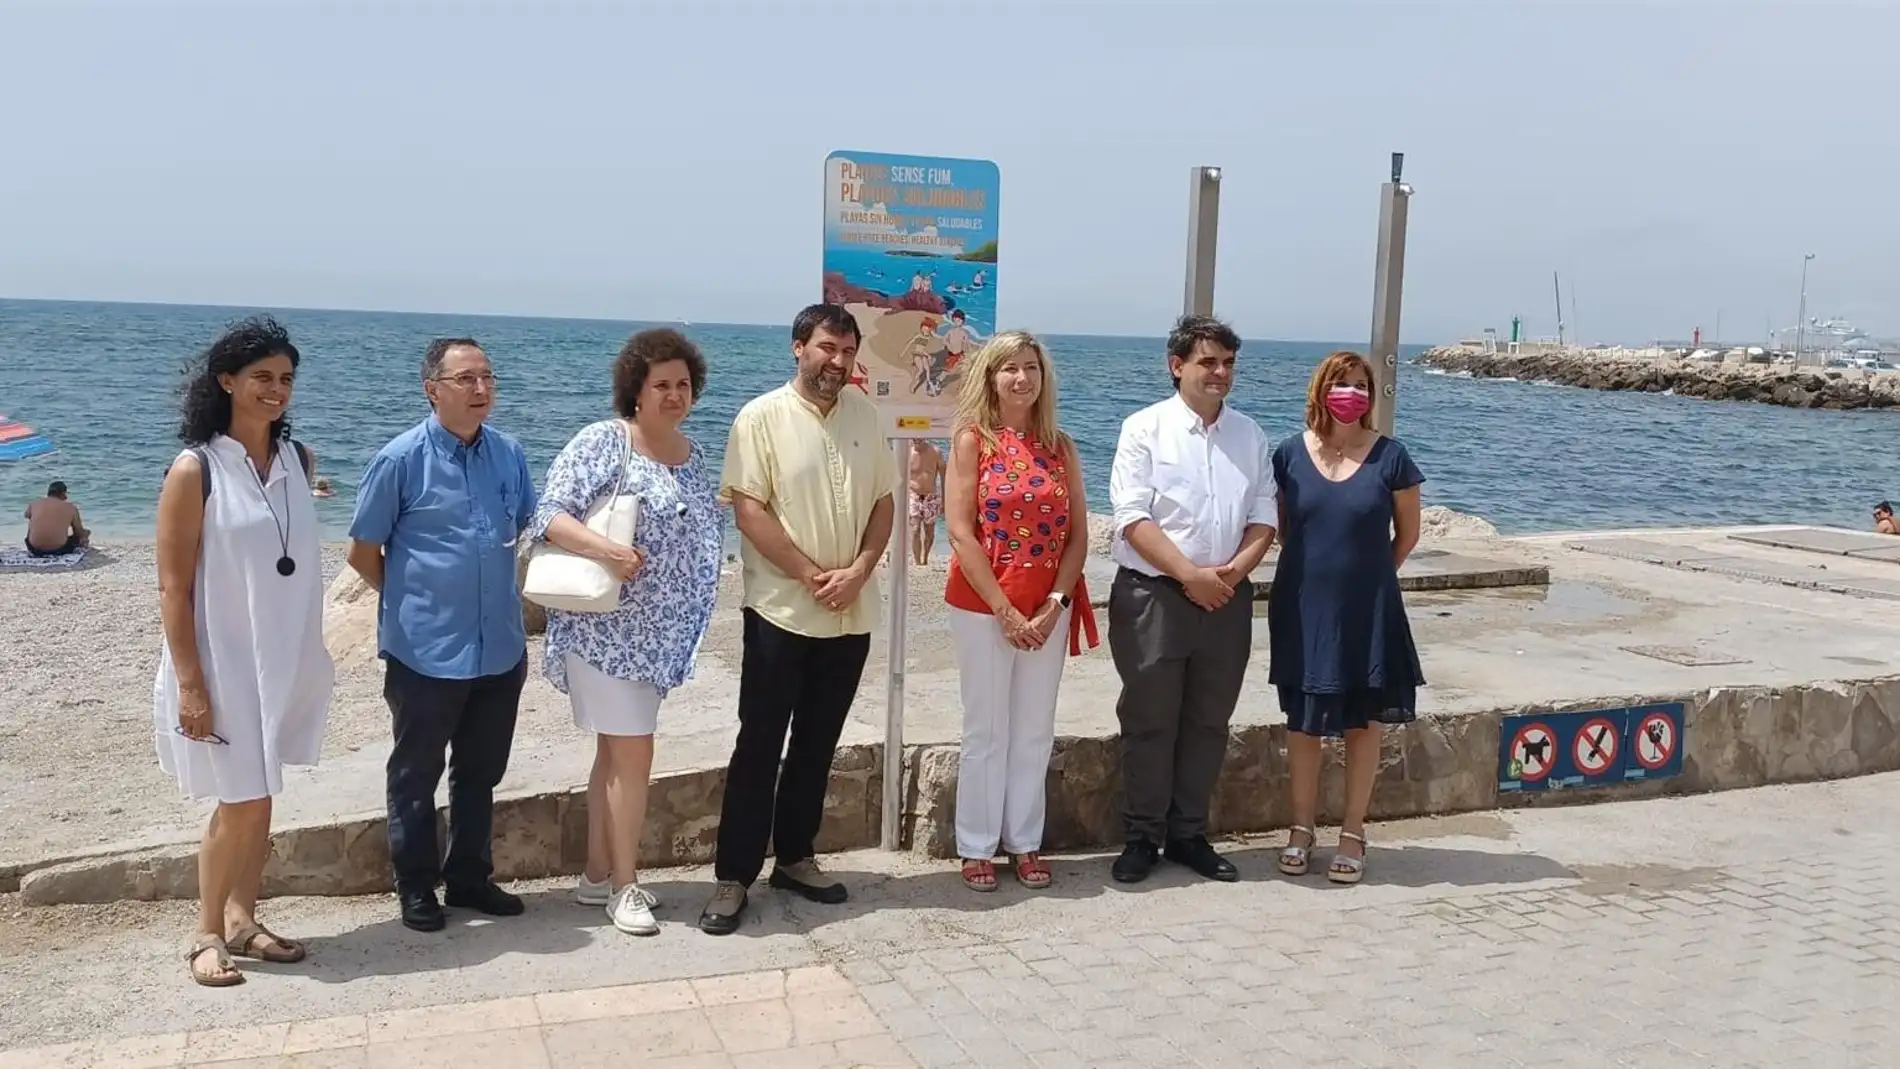 Palma incorpora el arenal de El Molinar al programa 'Platges sense fum'